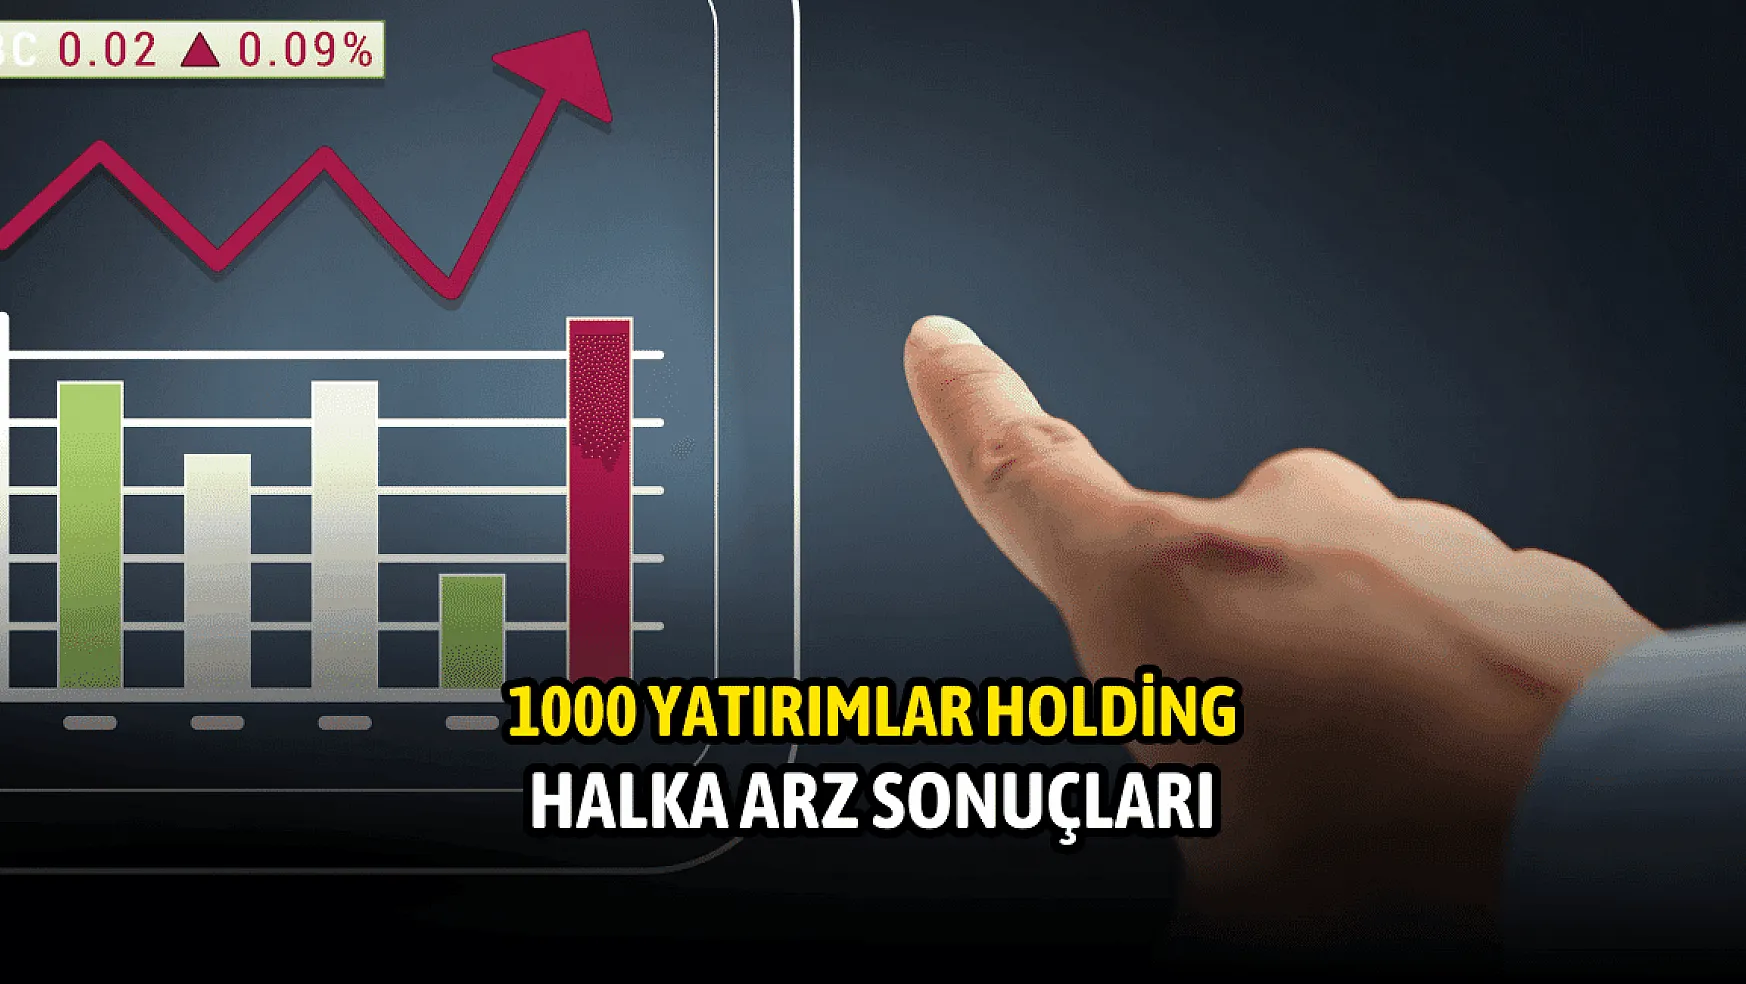 1000 Yatırımlar Holding (BINHO) halka arz sonuçları açıklandı!